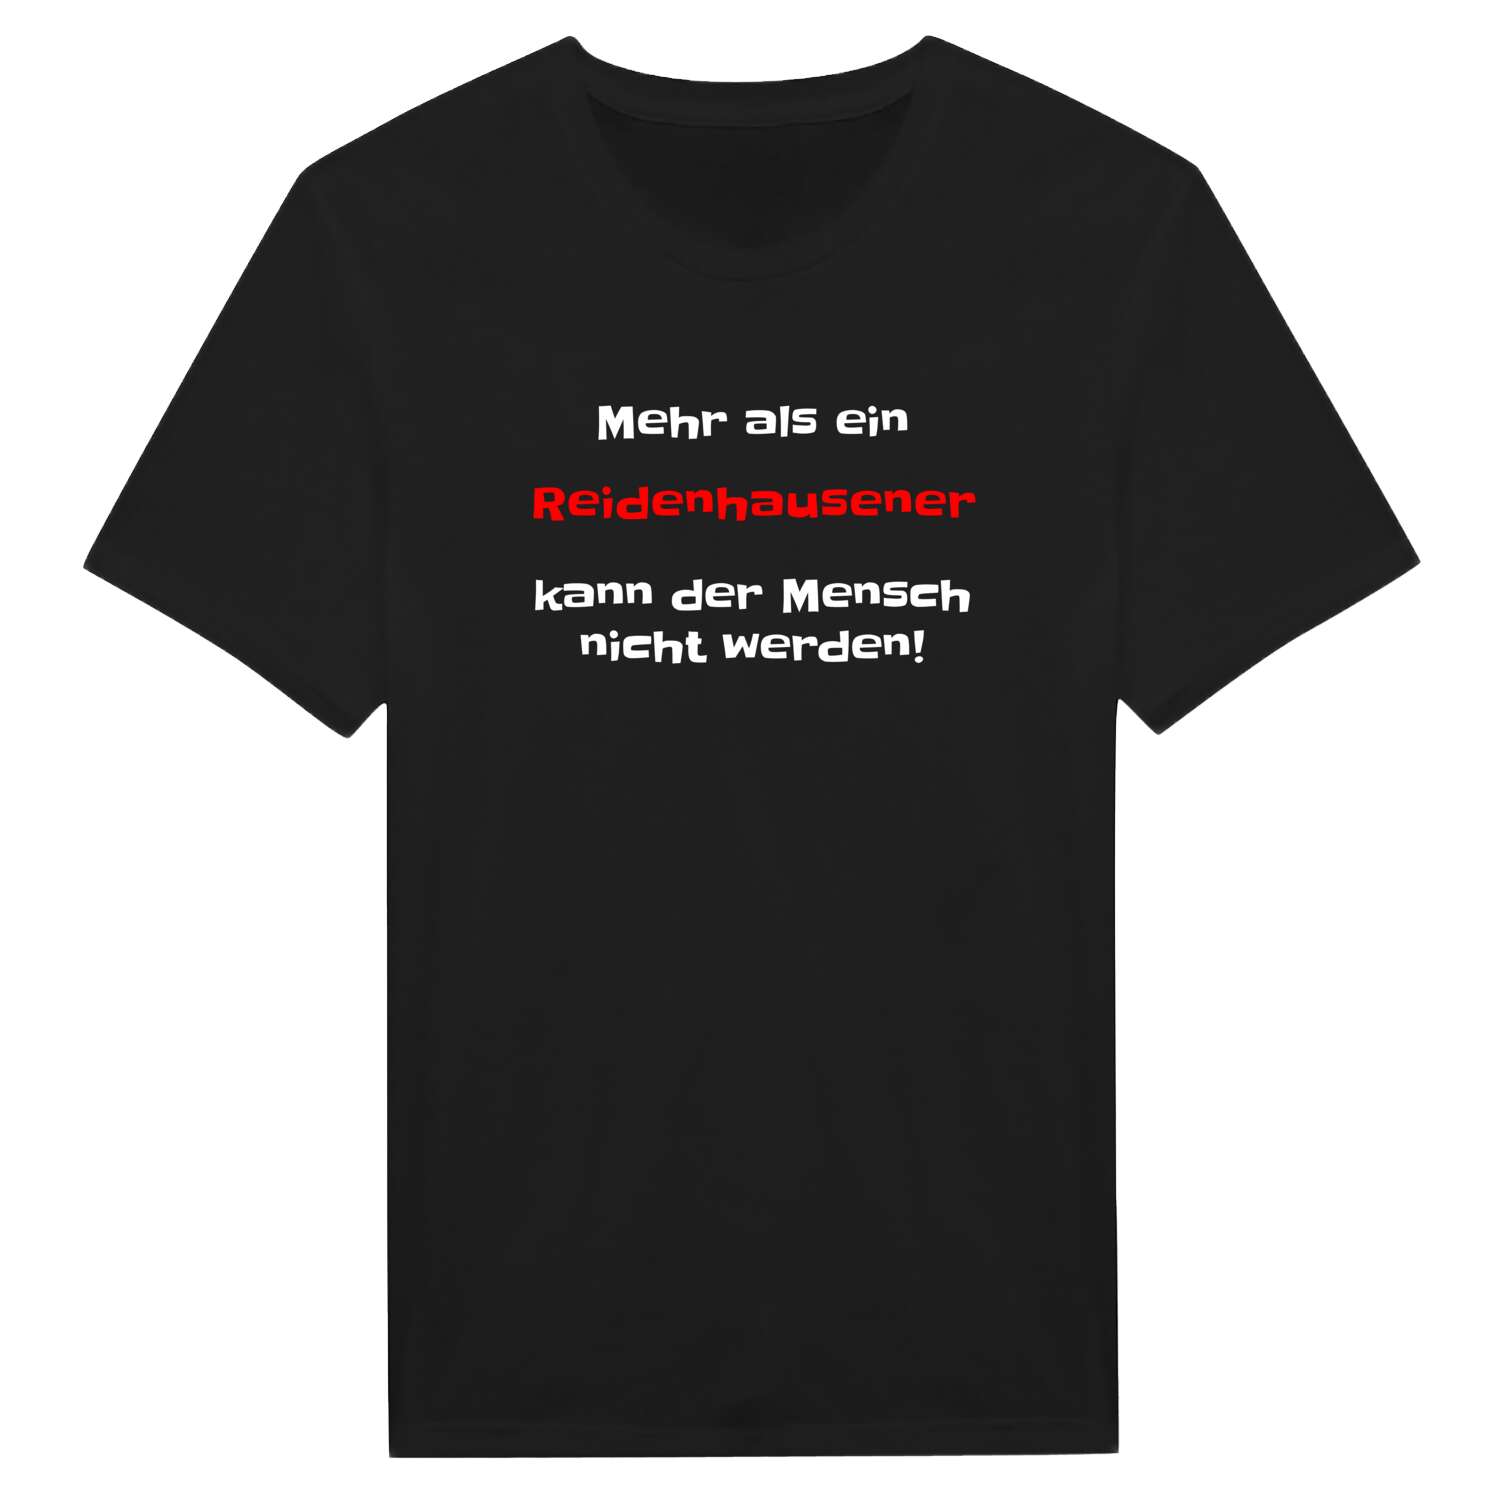 Reidenhausen T-Shirt »Mehr als ein«